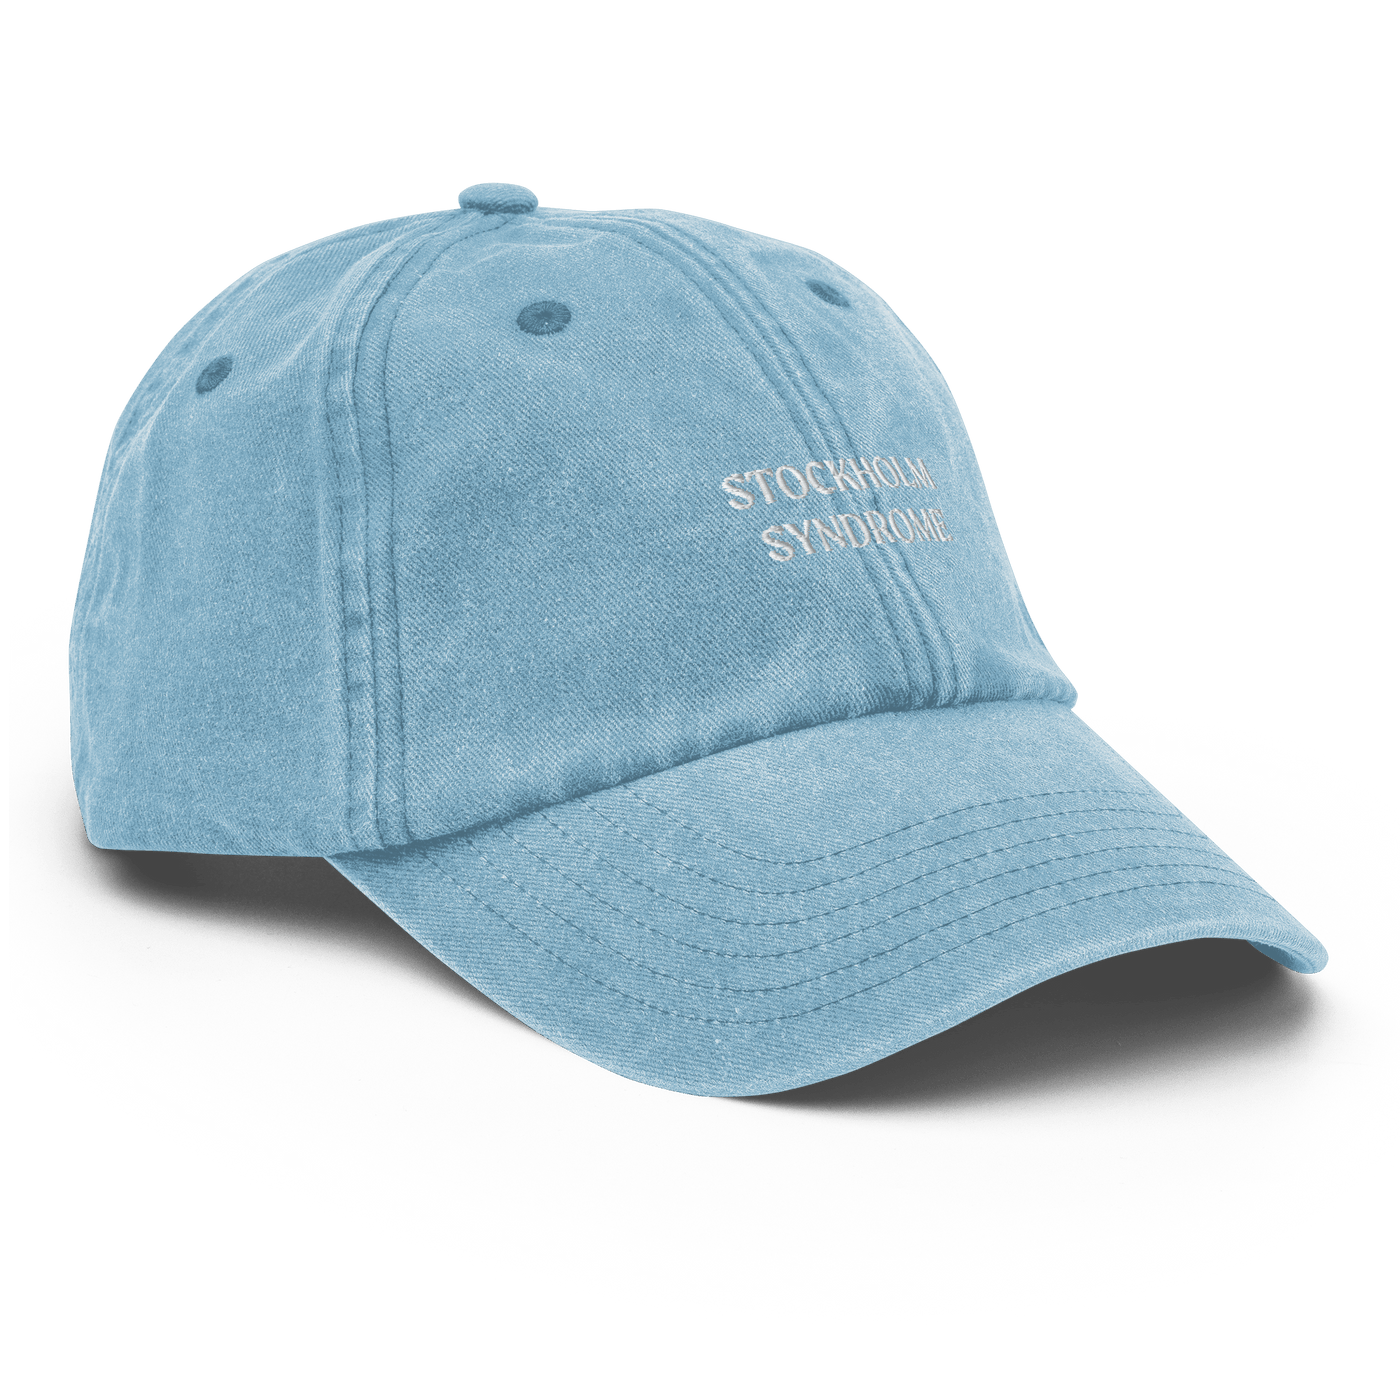 Stockholm Syndrome Vintage Hat - Vintage Light Denim - - Just Another Cap Store